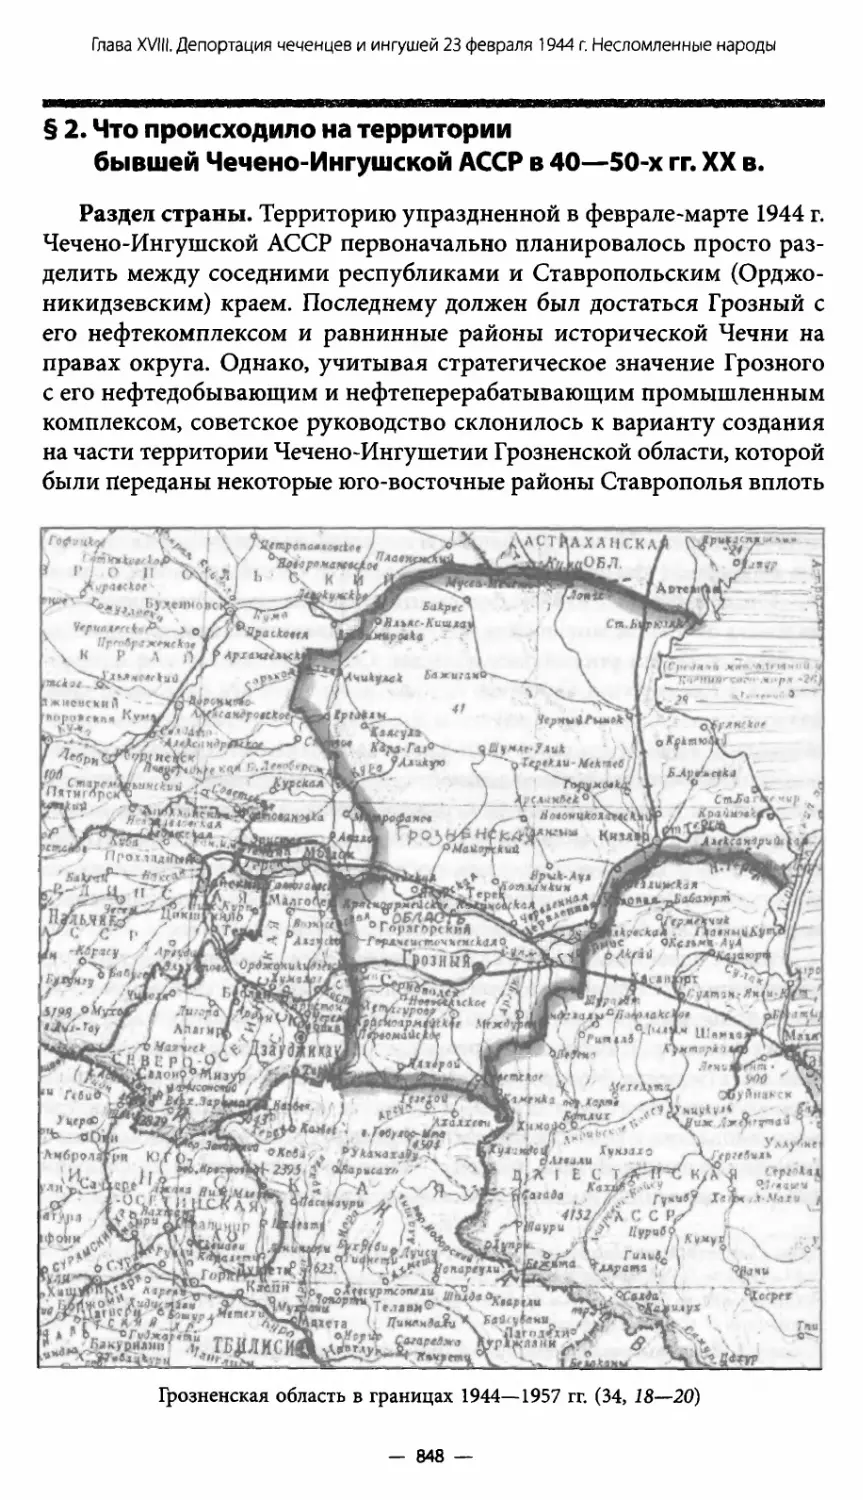 § 2. Что происходило на территории бывшей Чечено-Ингушской АССР в 40—50-х гг. XX в